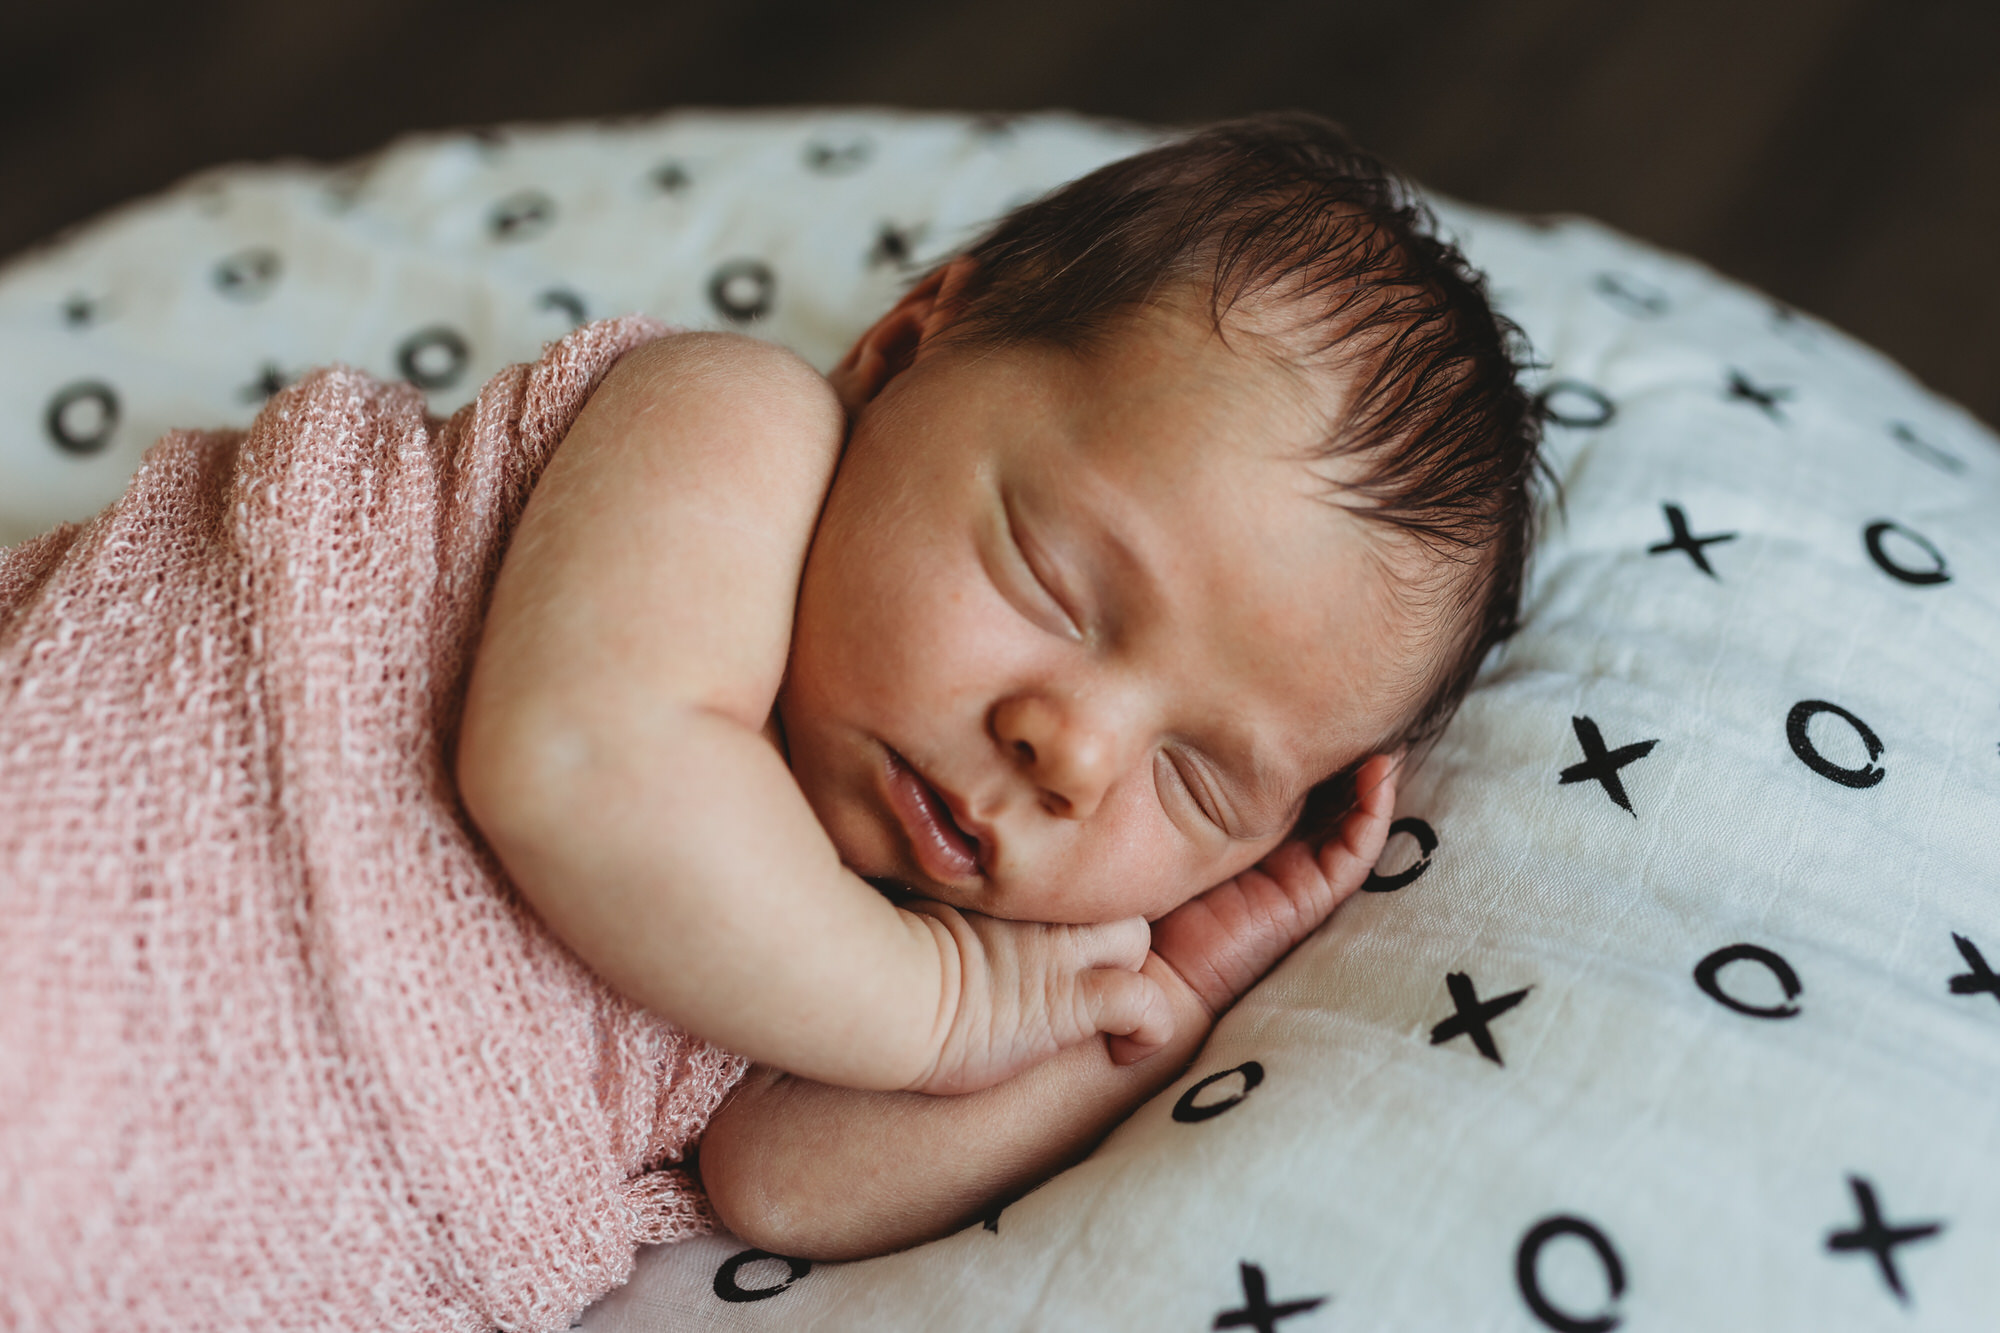 Dundas Newborn Photographer - baby in pink blanket